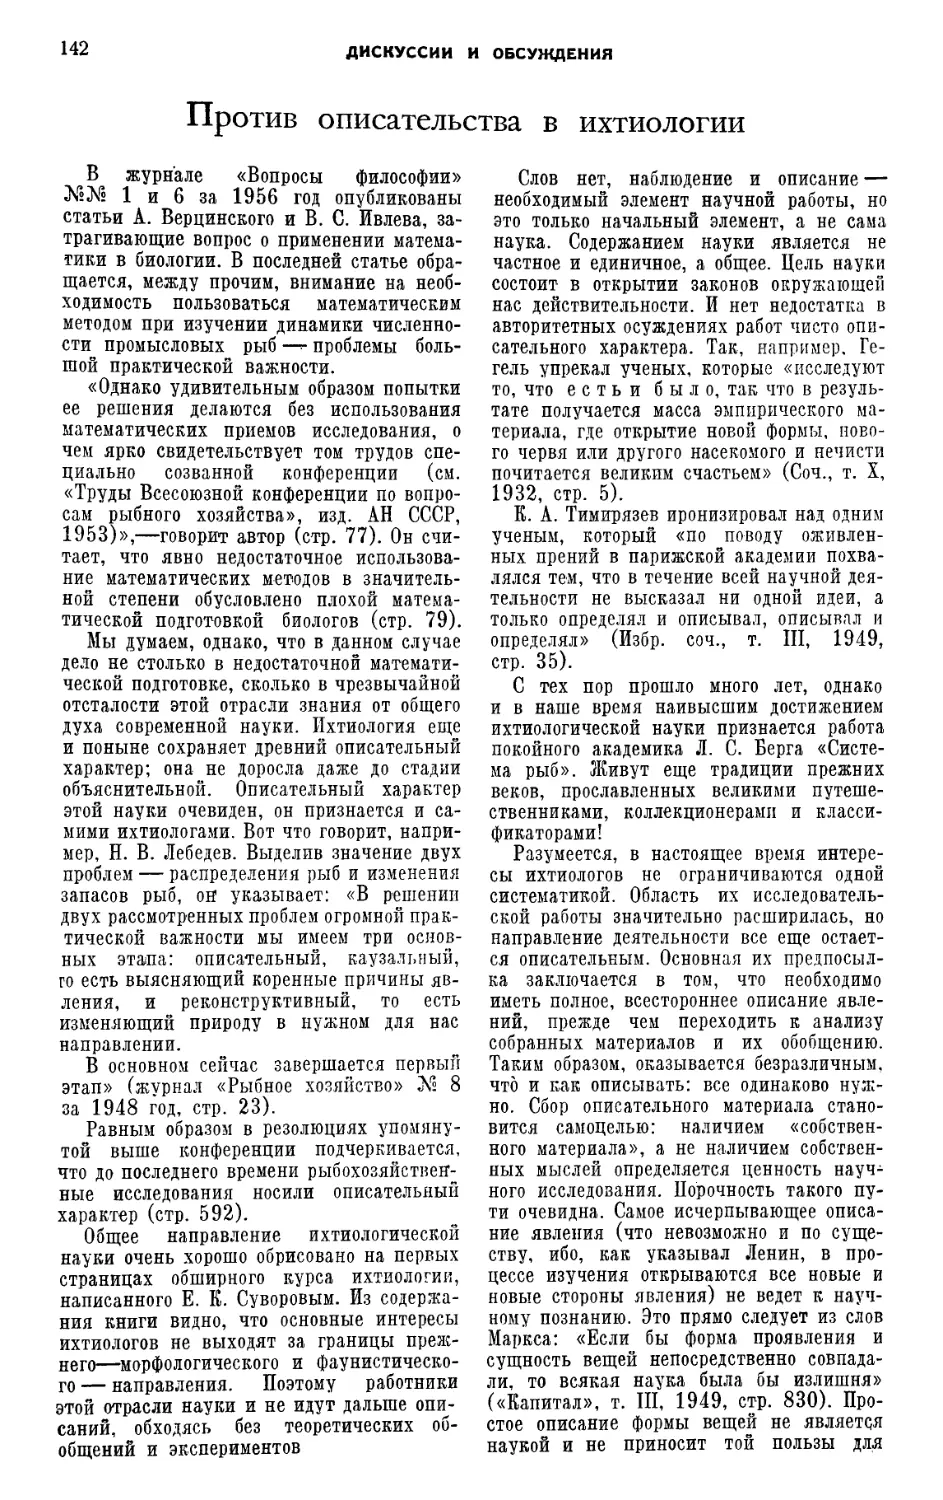 Ф. И. Баранов — Против описательства в ихтиологии